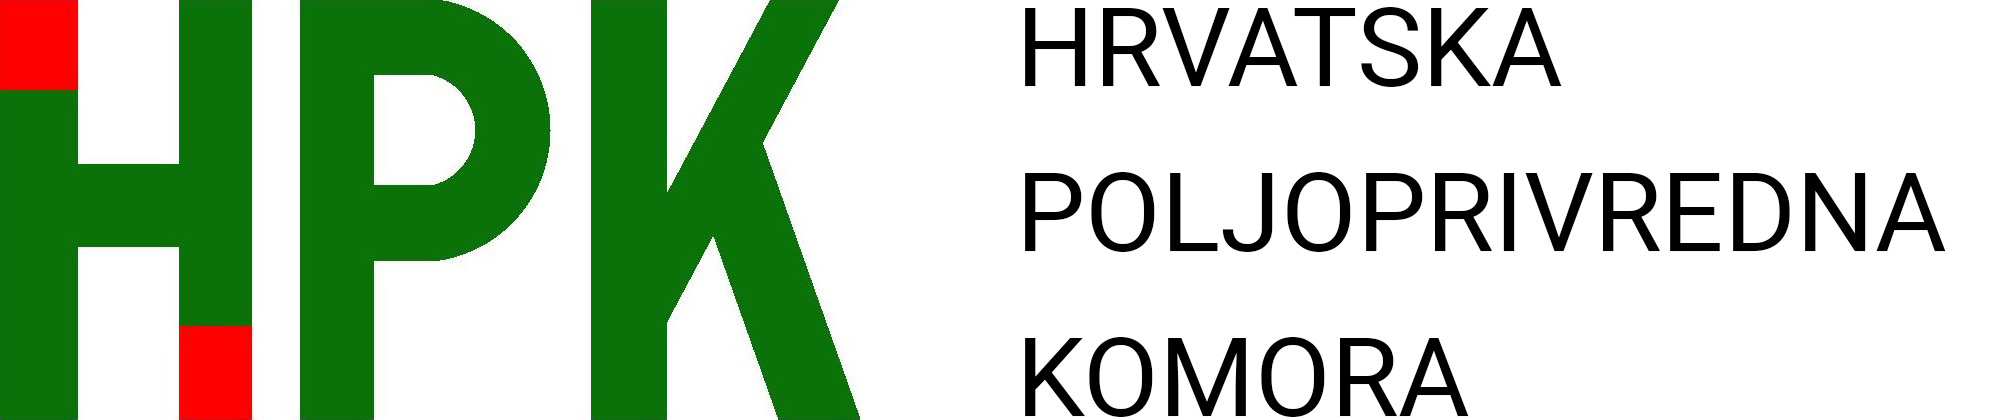 Ulozi, ciljevi i aktivnosti HPK - predsjednik Jakopović | HPK